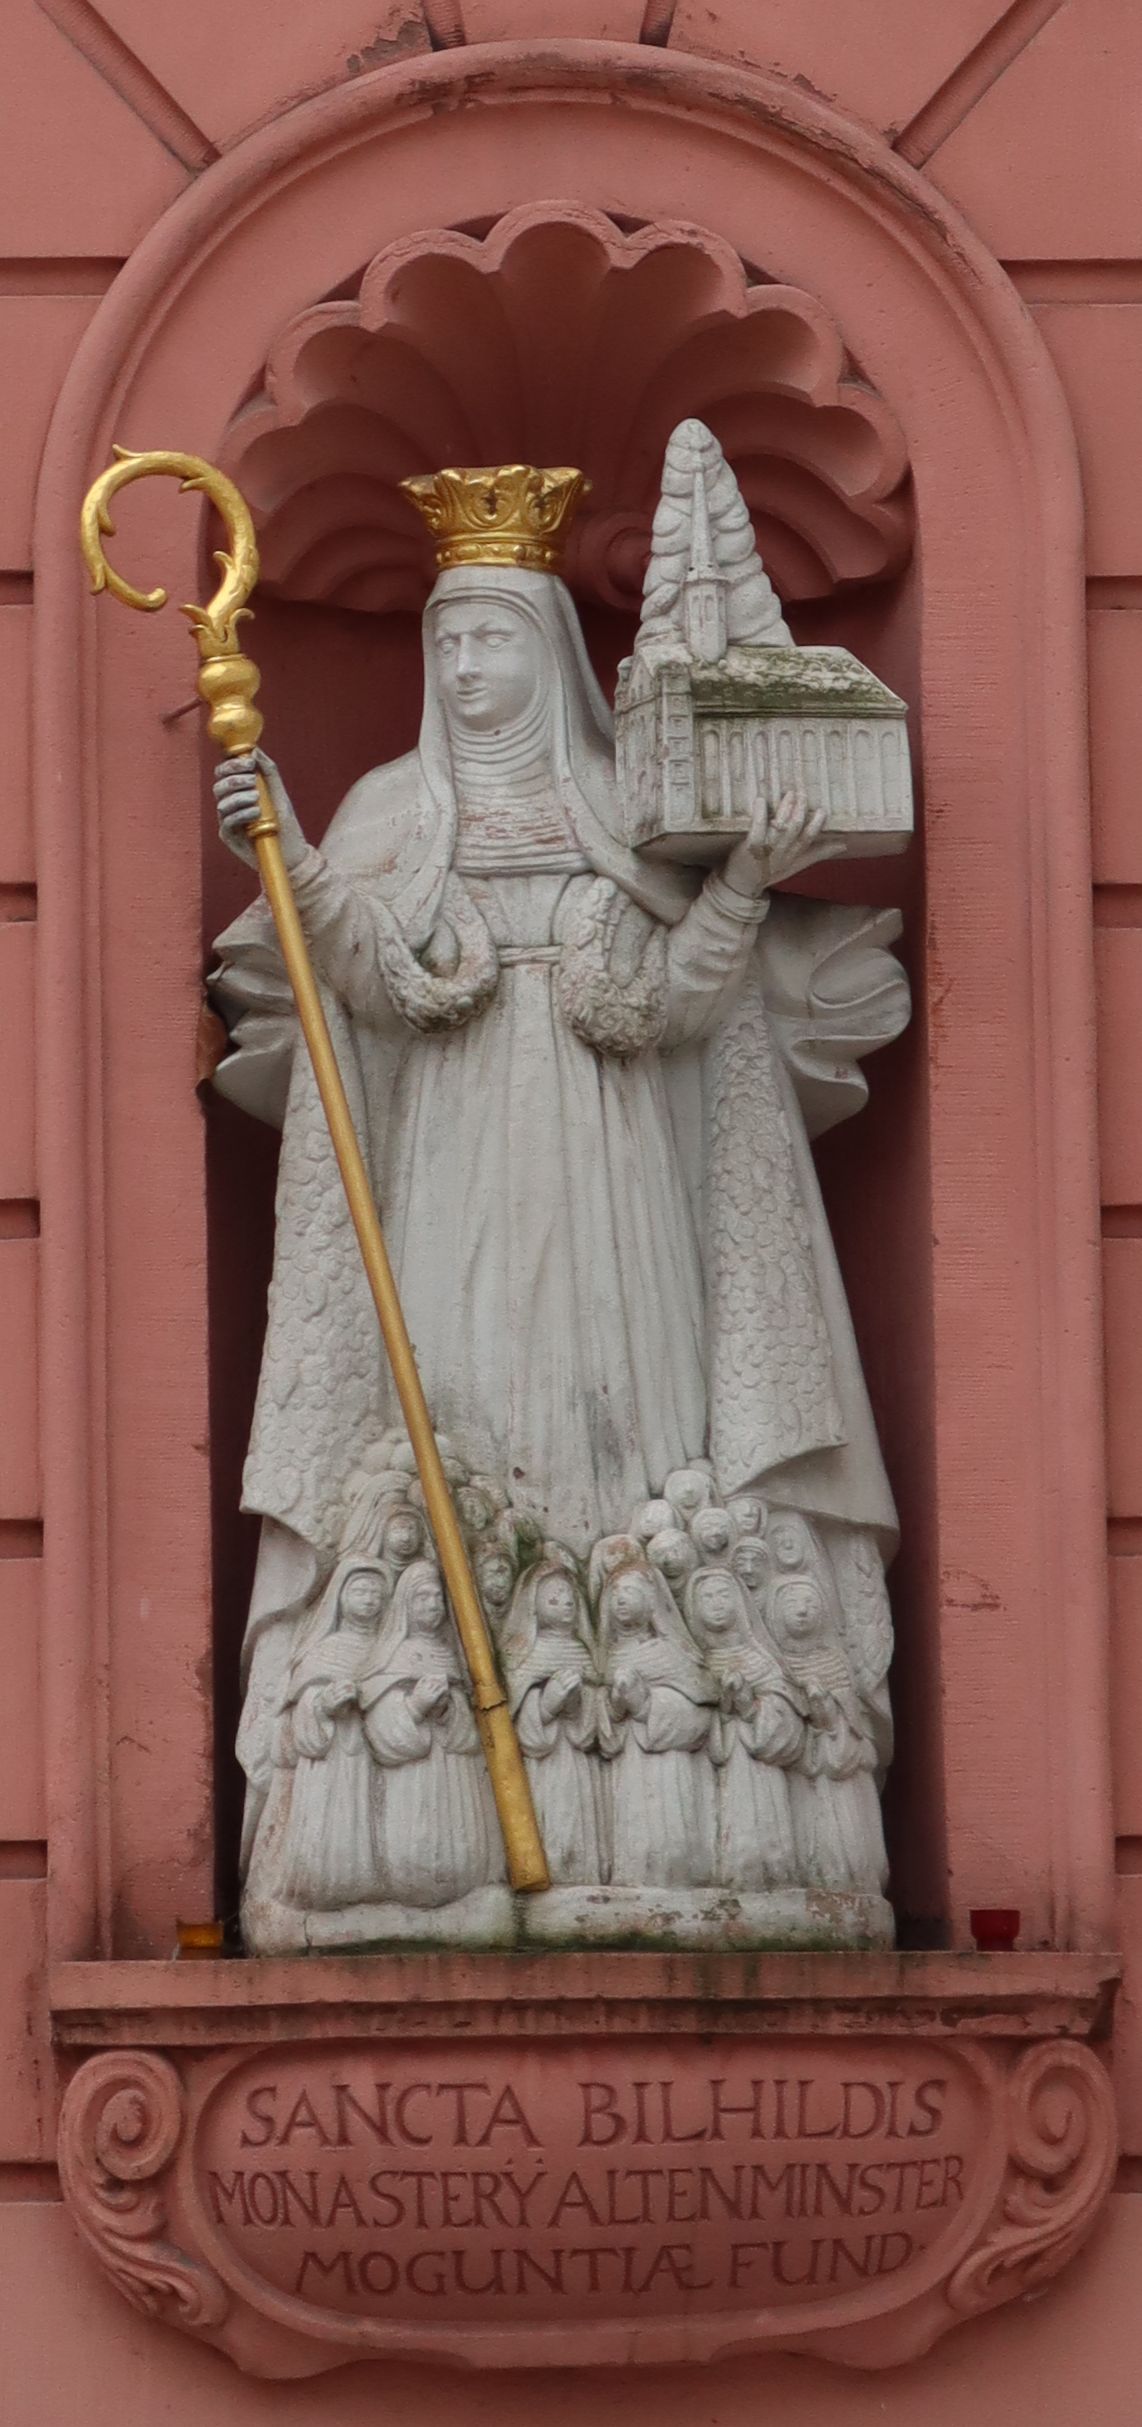 Bilhildis-Statue mit Äbtissinnenstab und Modell des Altmünsterklosters am Erthaler Hof in Mainz